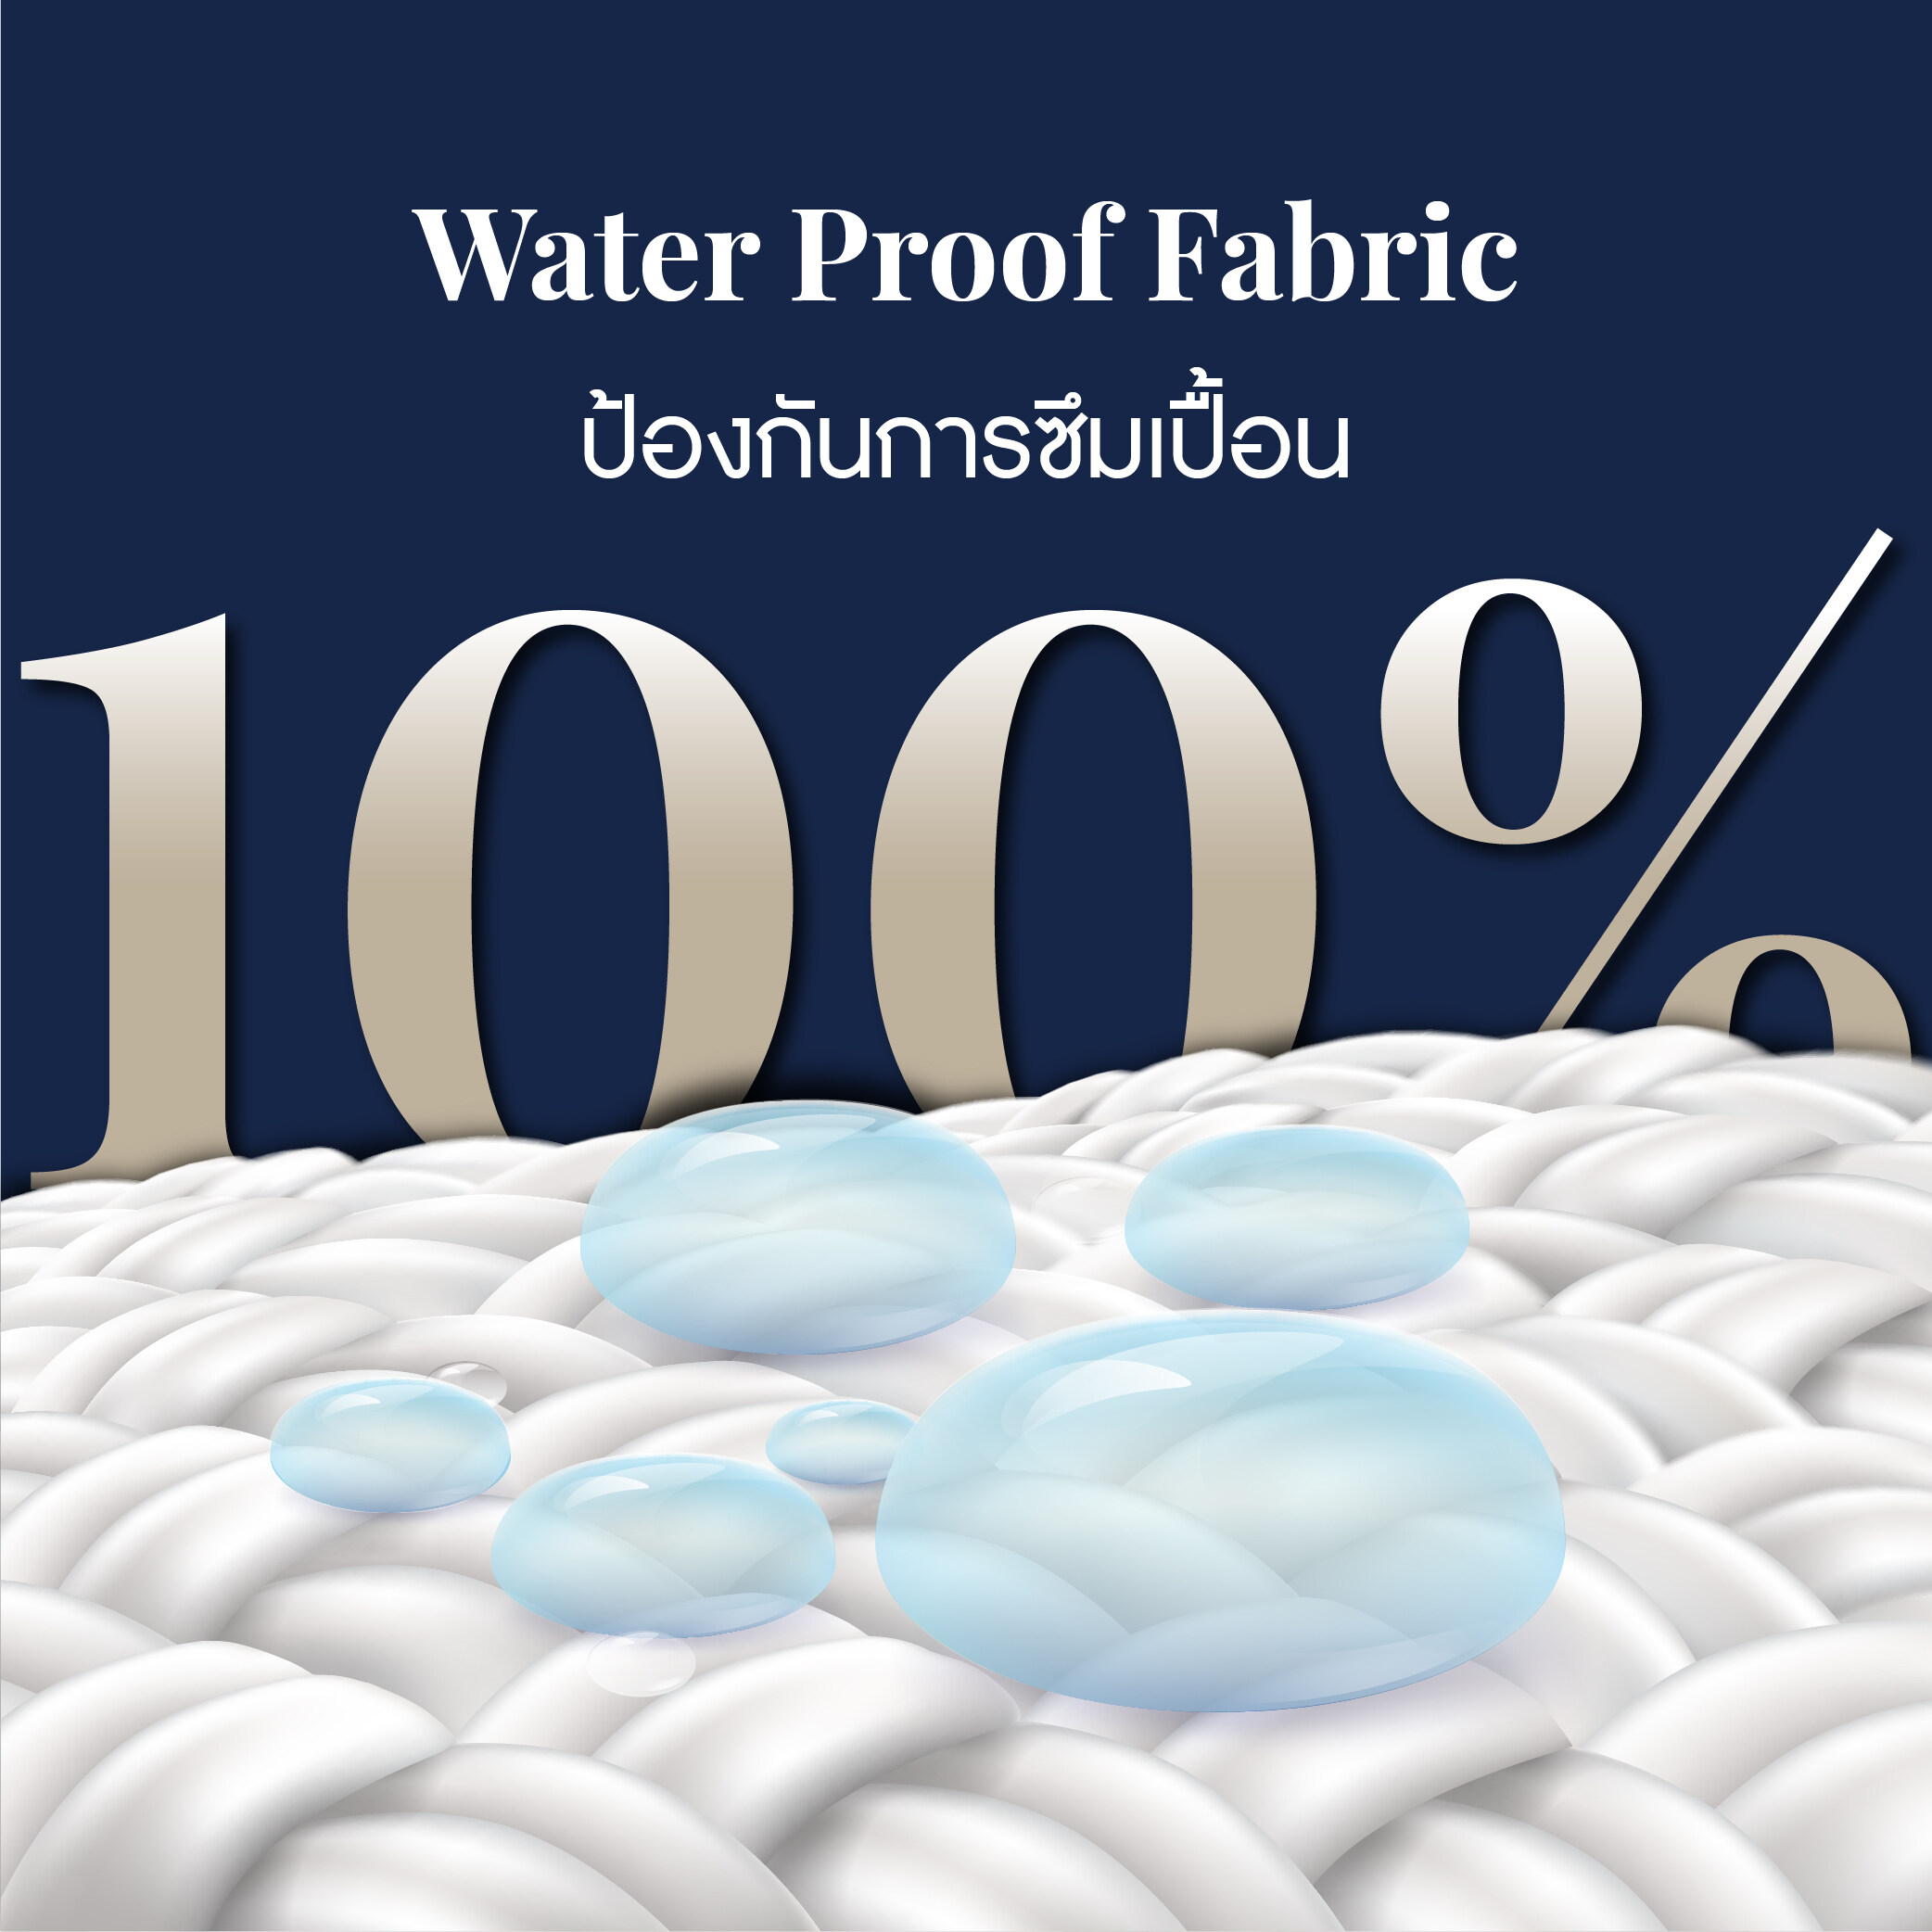 ผ้ารองกันเปื้อนกันน้ำ100%แบบรัดมุมสี่ด้าน สี Plain White สี Plain Whiteขนาดสินค้า 3.5 ฟุต